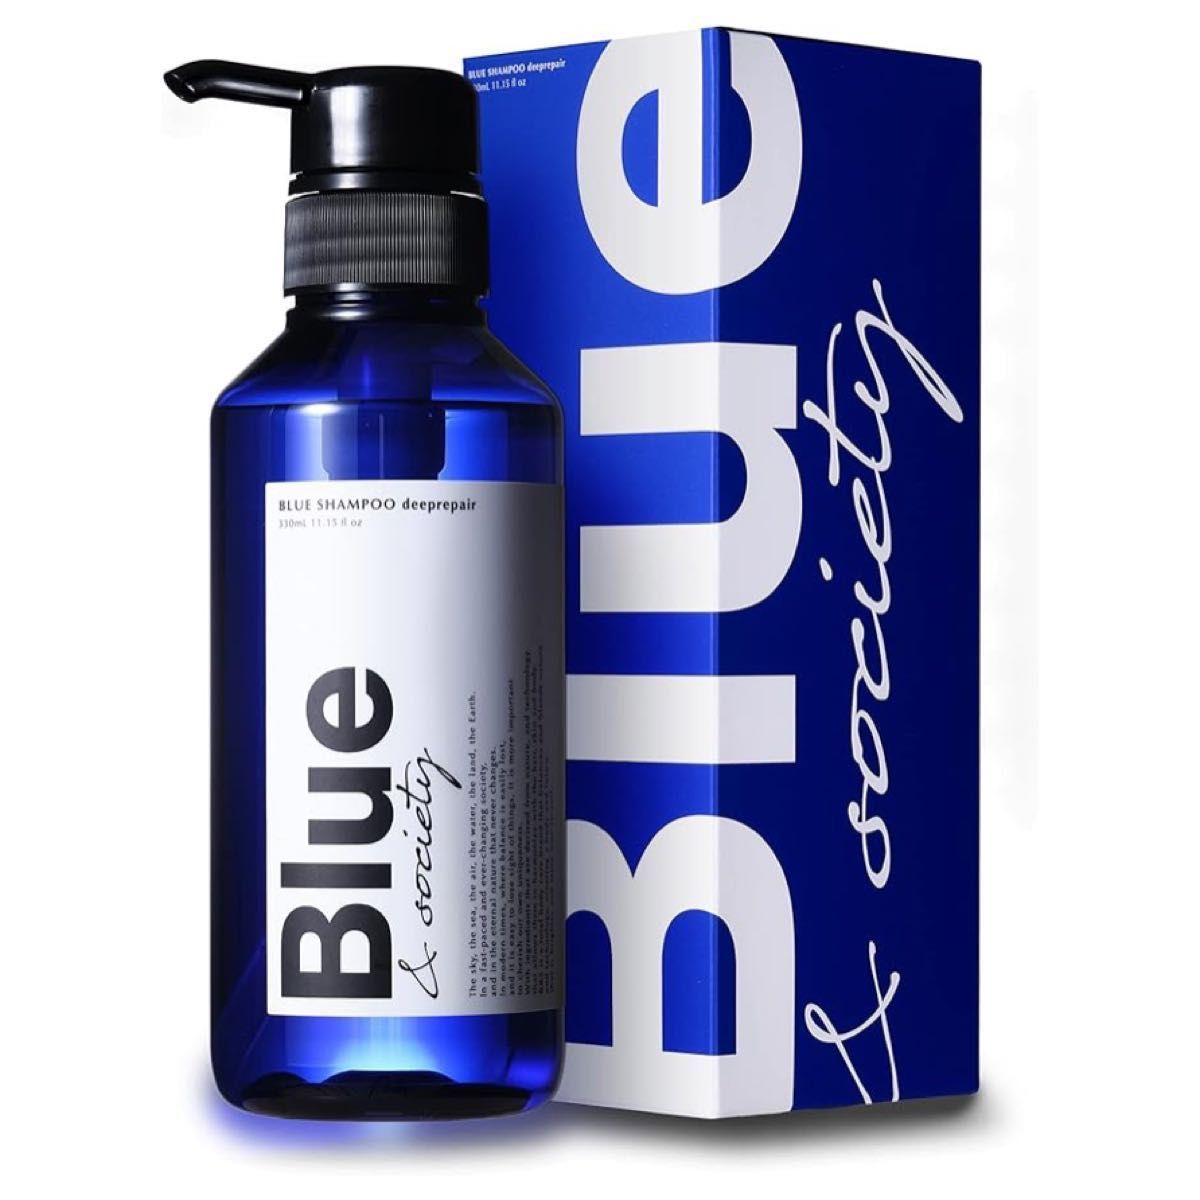 Blue 香水シャンプー 325ml メンズ プロ調香師が監修 ジャスミン&ホワイトムスクの香り